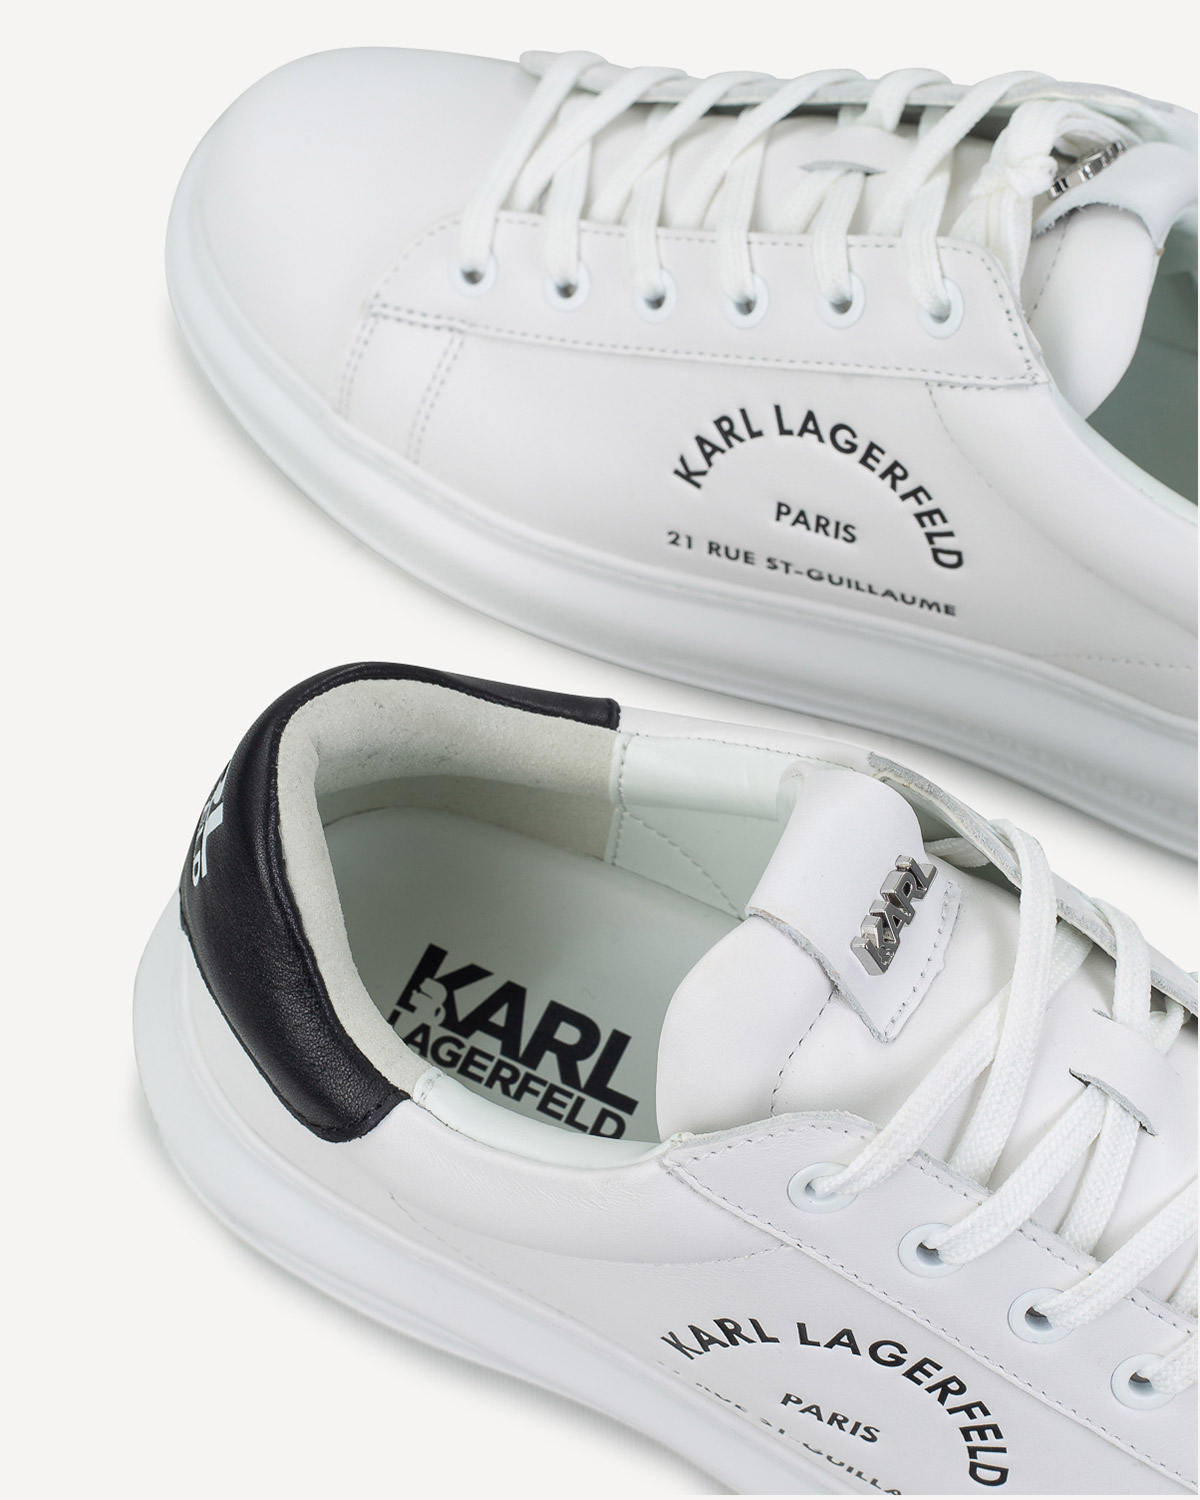 Άνδρας - Sneakers - Karl Lagerfeld Λευκό